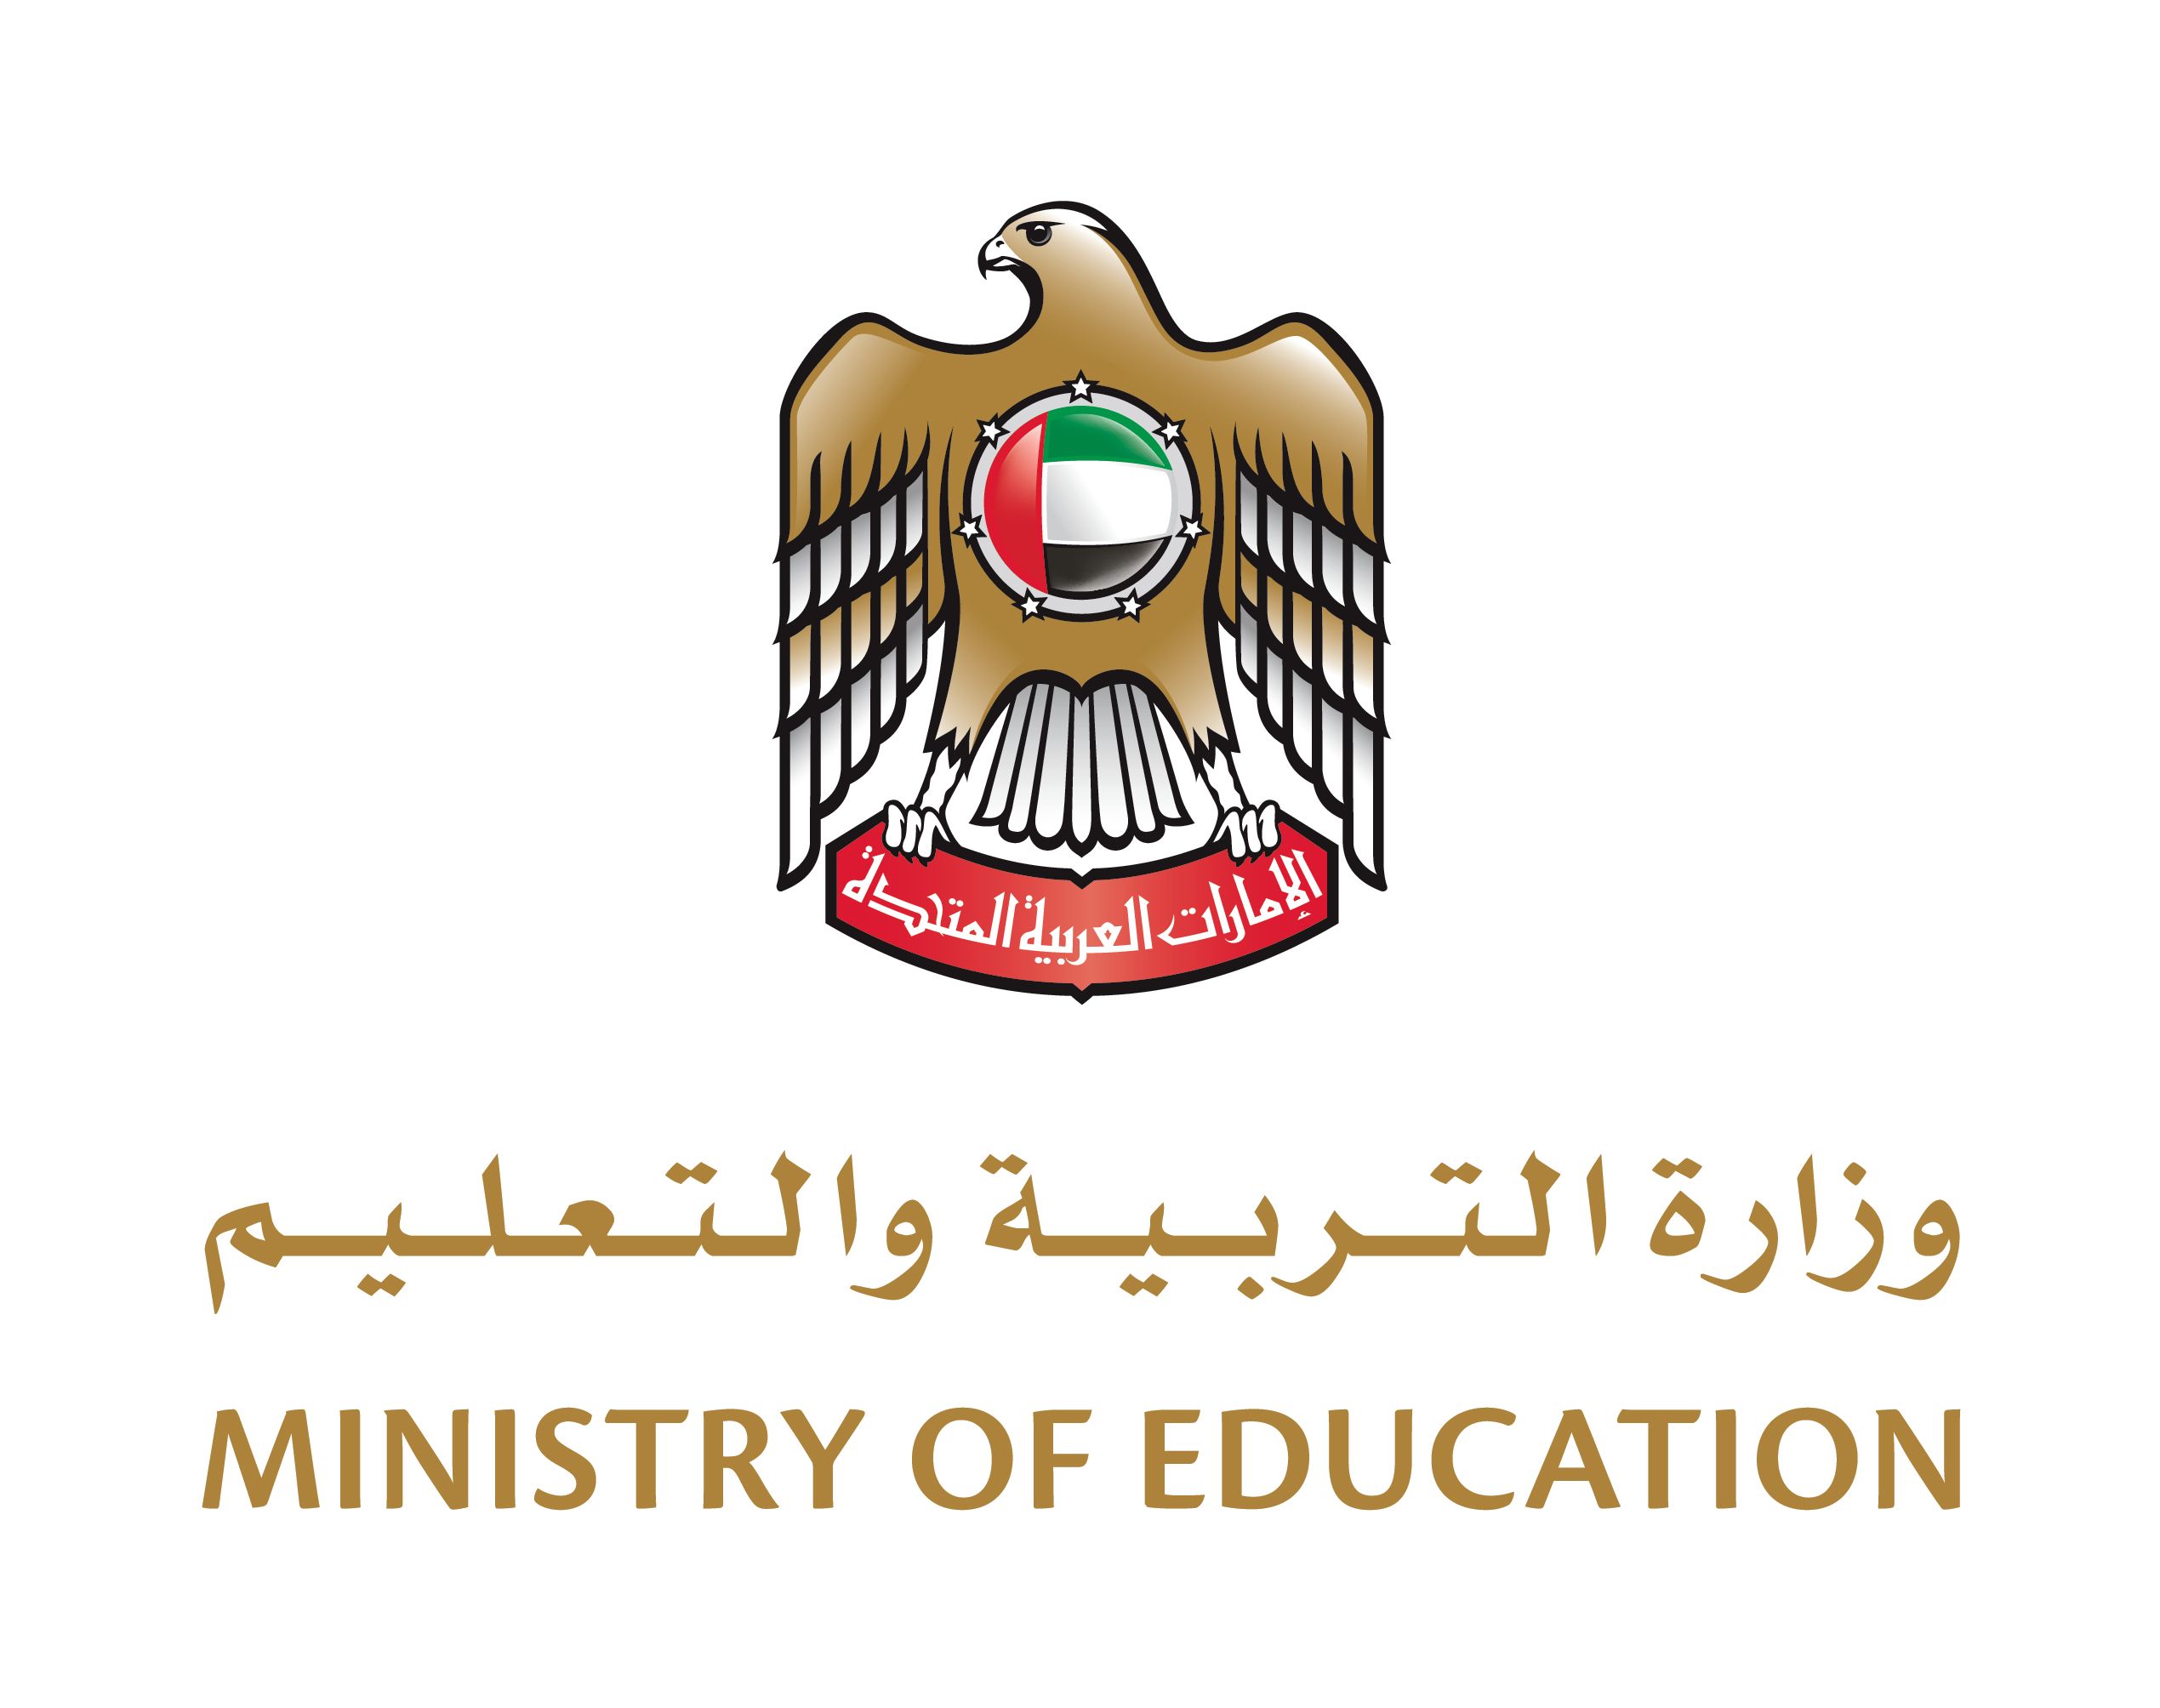 Ministry of Education United Arab Emirates